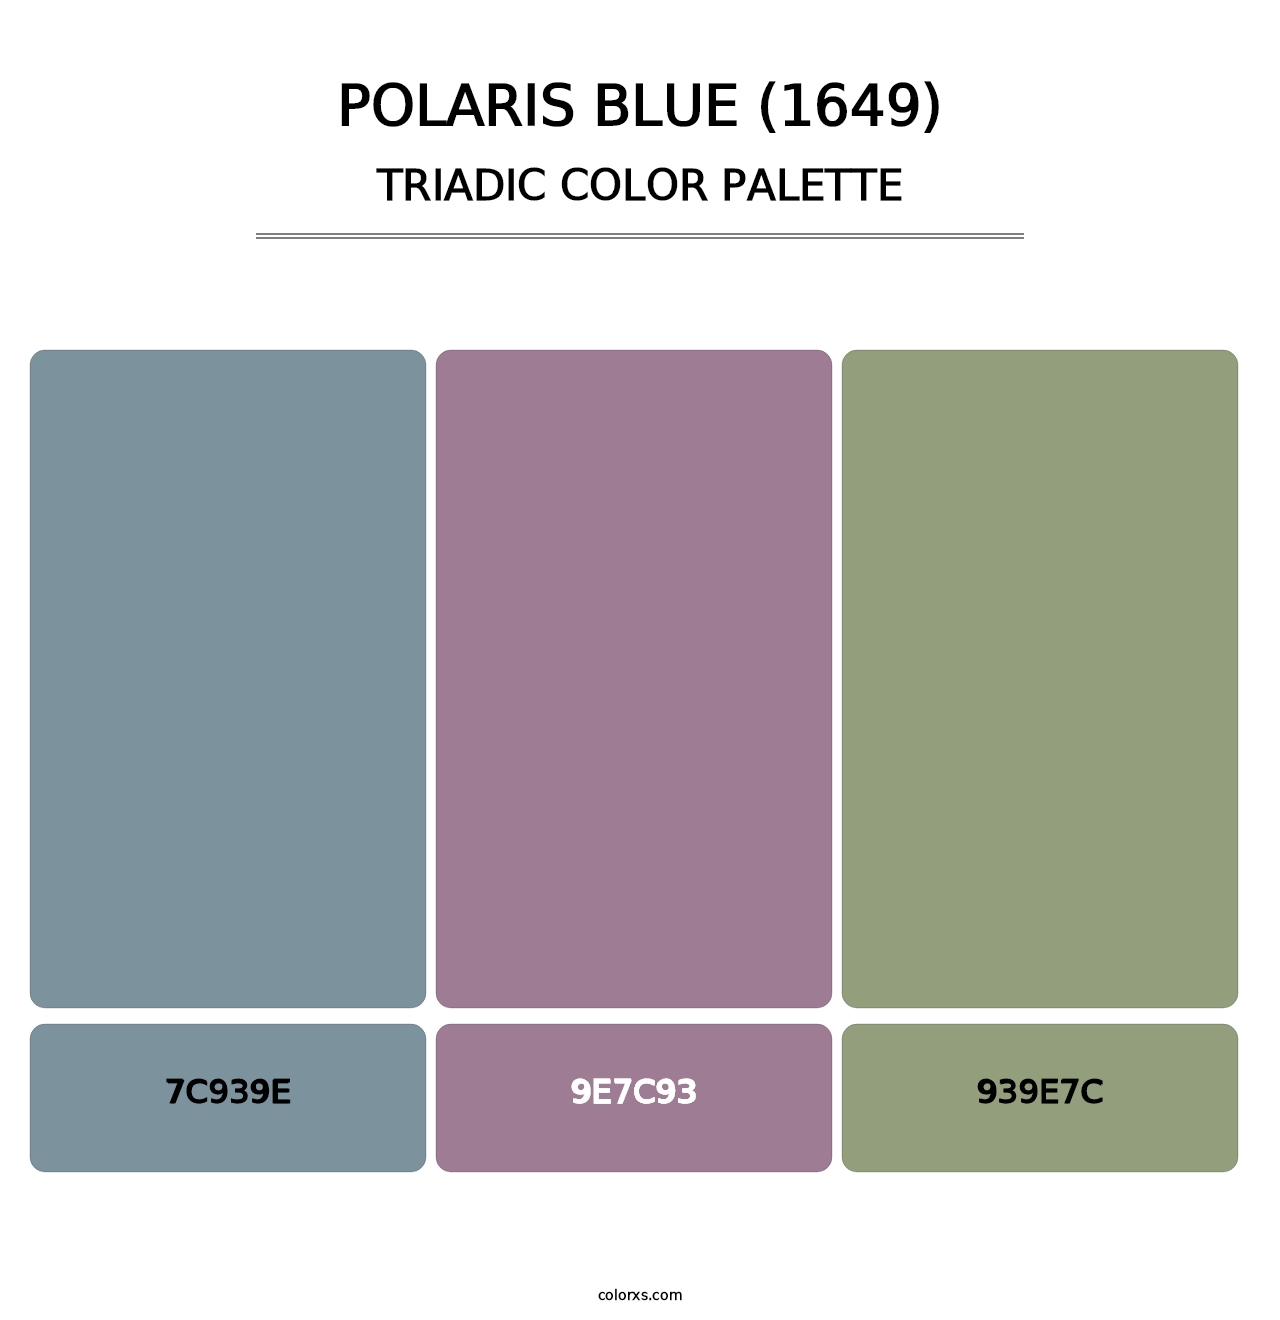 Polaris Blue (1649) - Triadic Color Palette